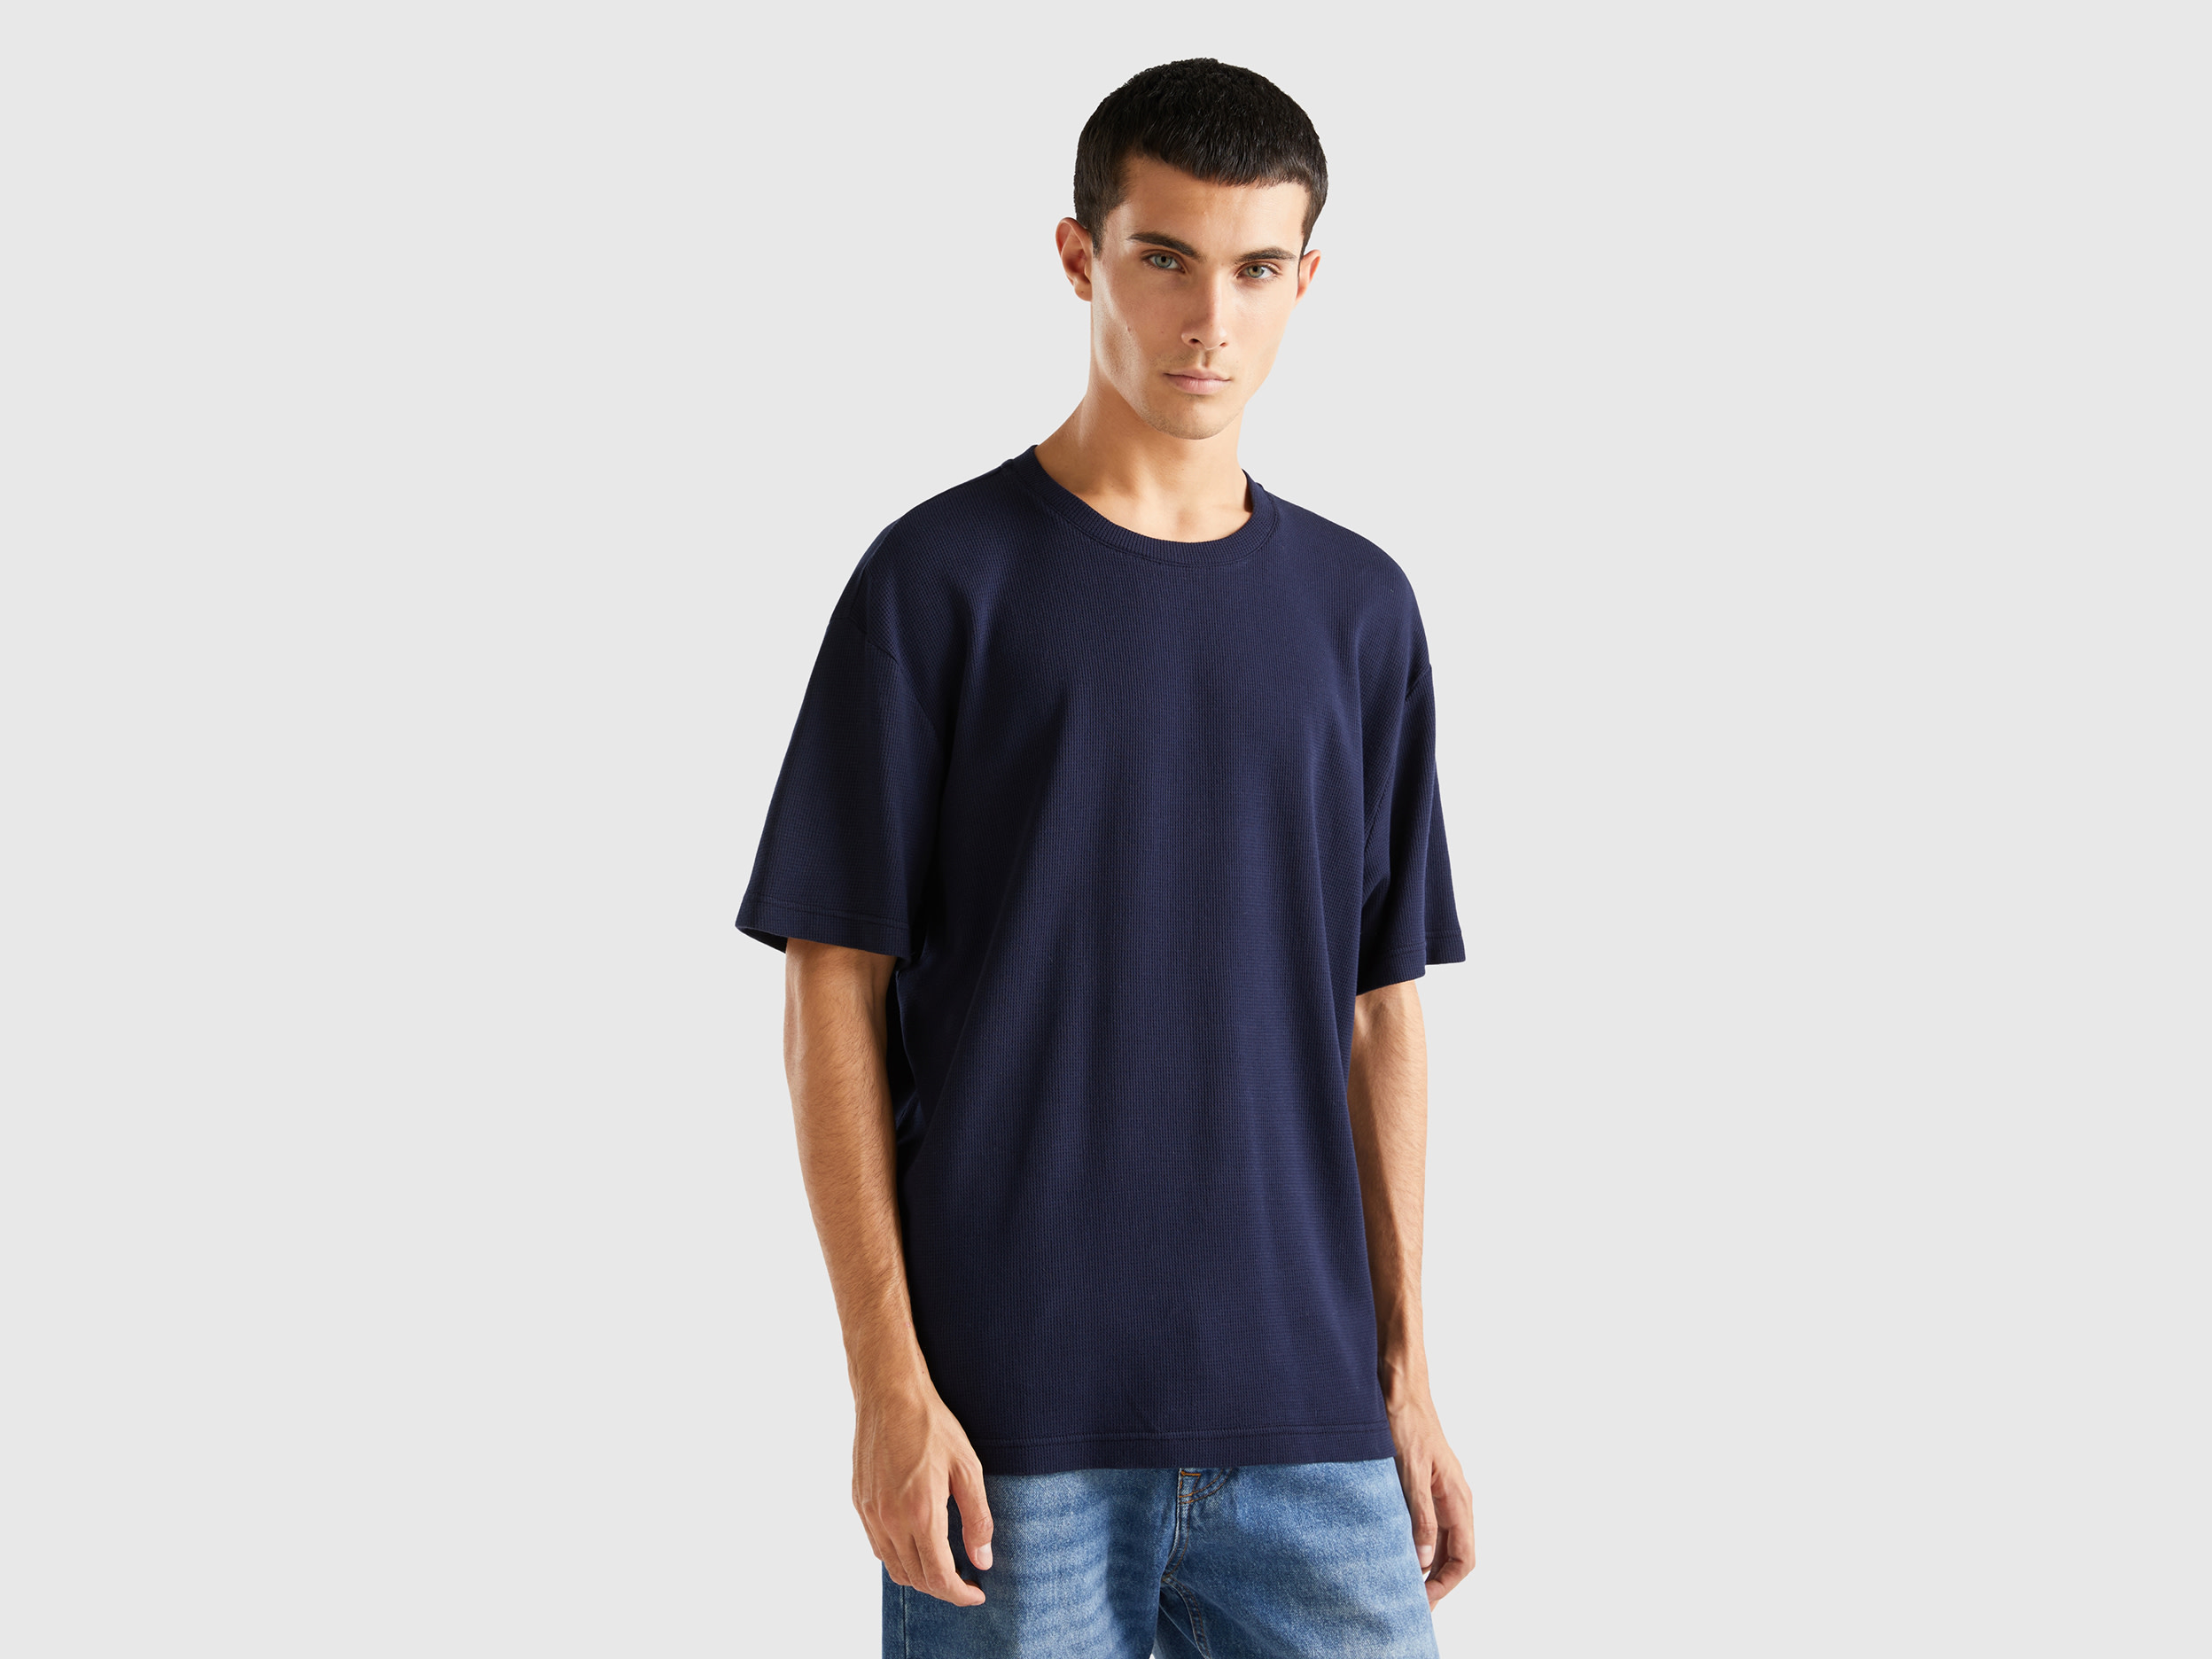 Benetton, Relaxed Fit T-shirt, size XS, Dark Blue, Men